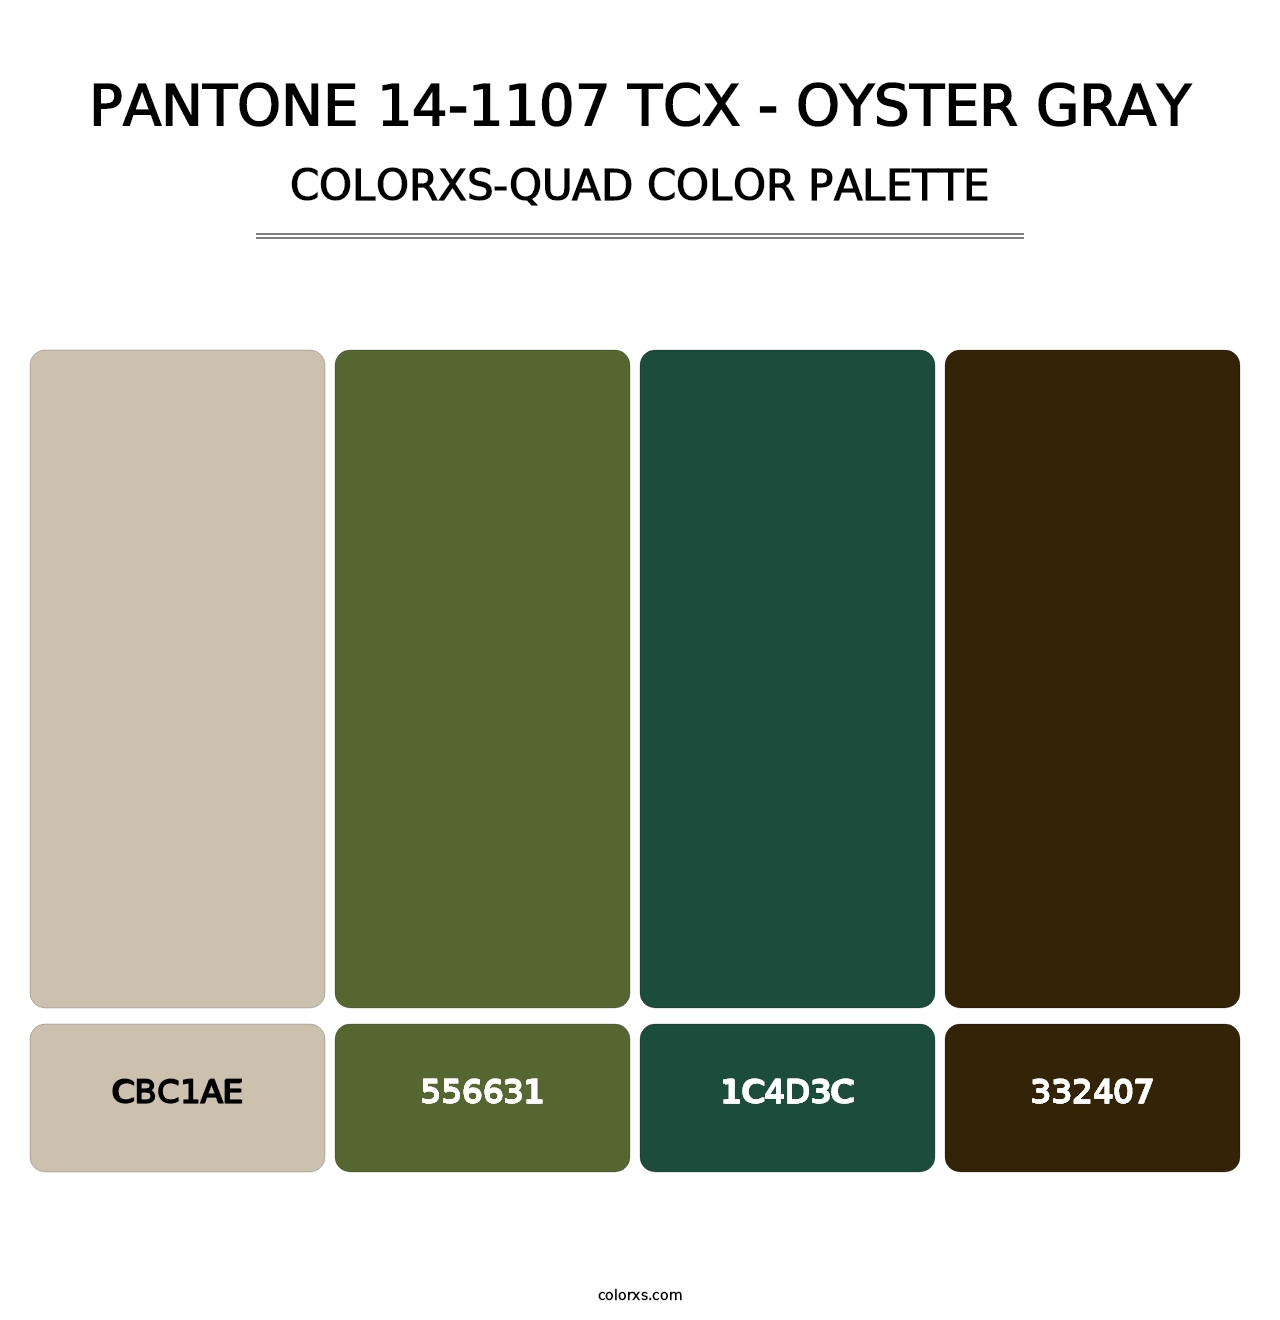 PANTONE 14-1107 TCX - Oyster Gray - Colorxs Quad Palette